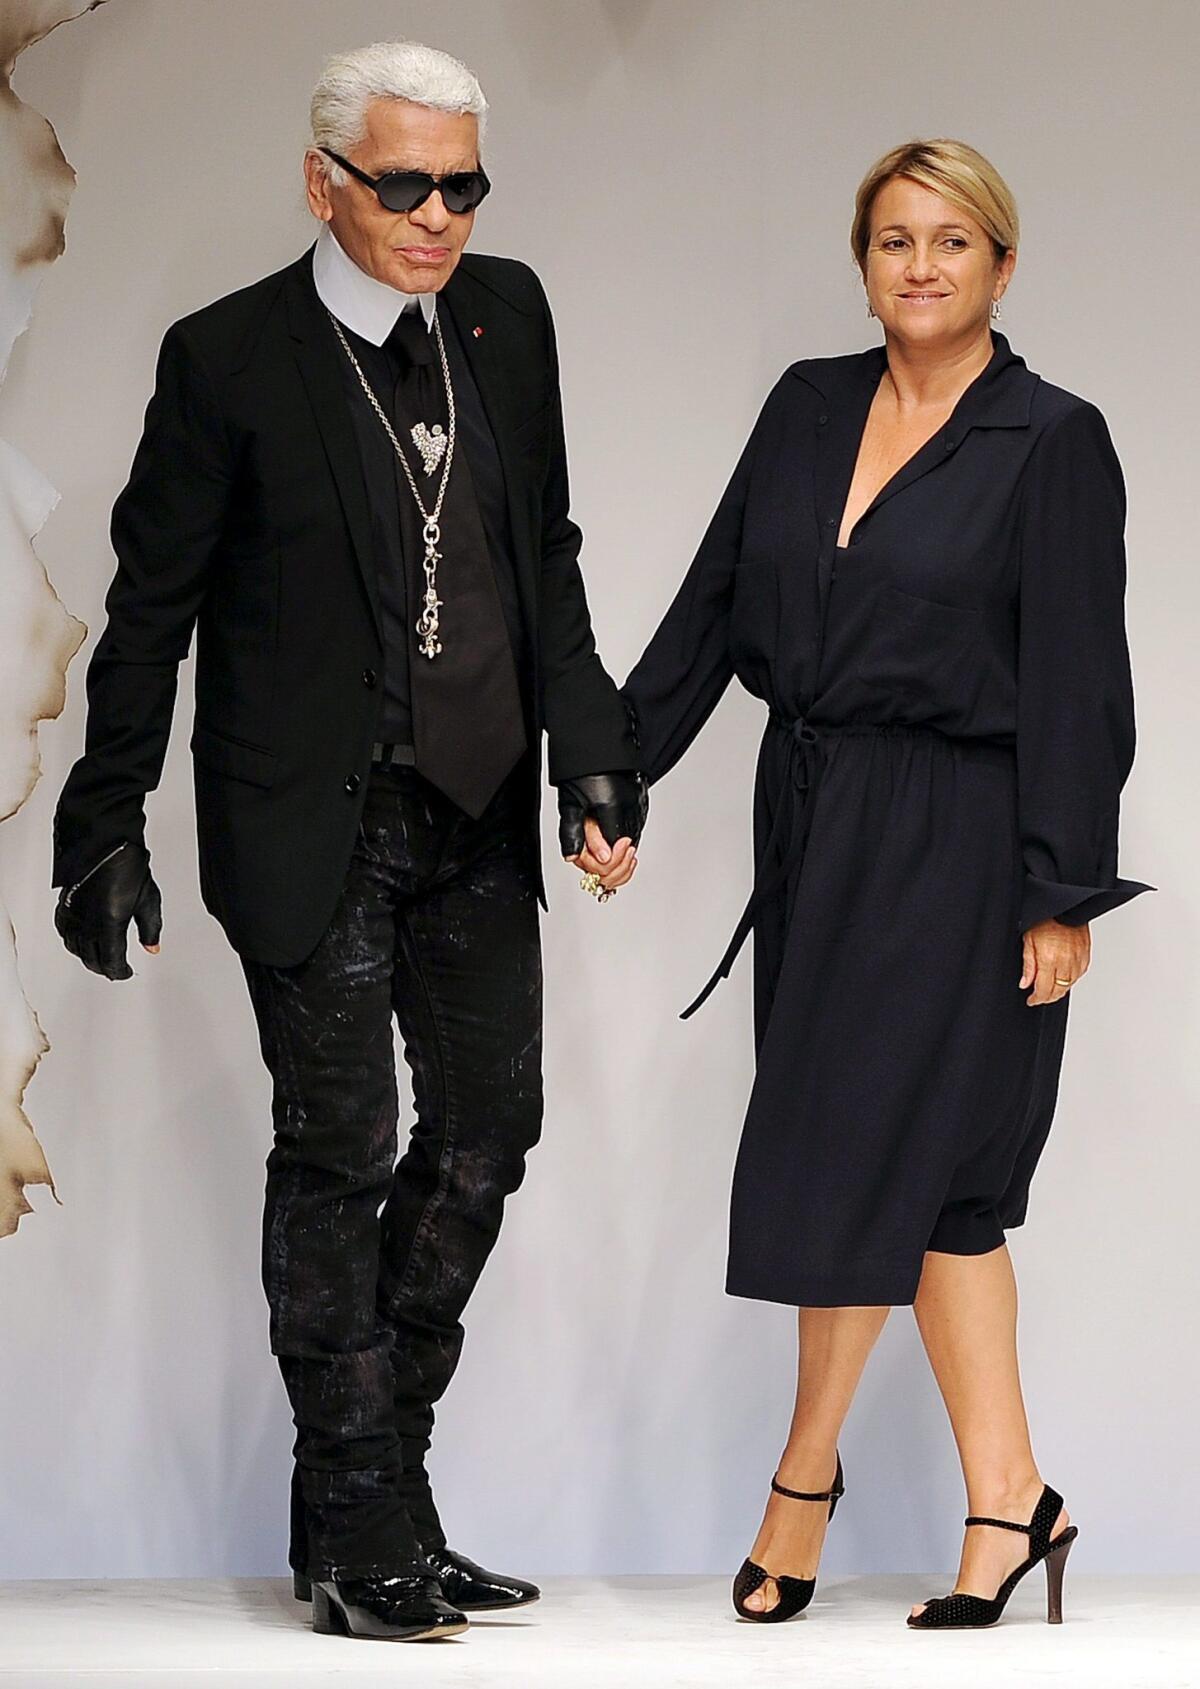 El diseñador Karl Lagerfeld y la diseñadora Silvia Venturini Fendi caminan por la pasarela al término de la presentación de la colección de Fendi durante la Semana de la Moda de Milán.